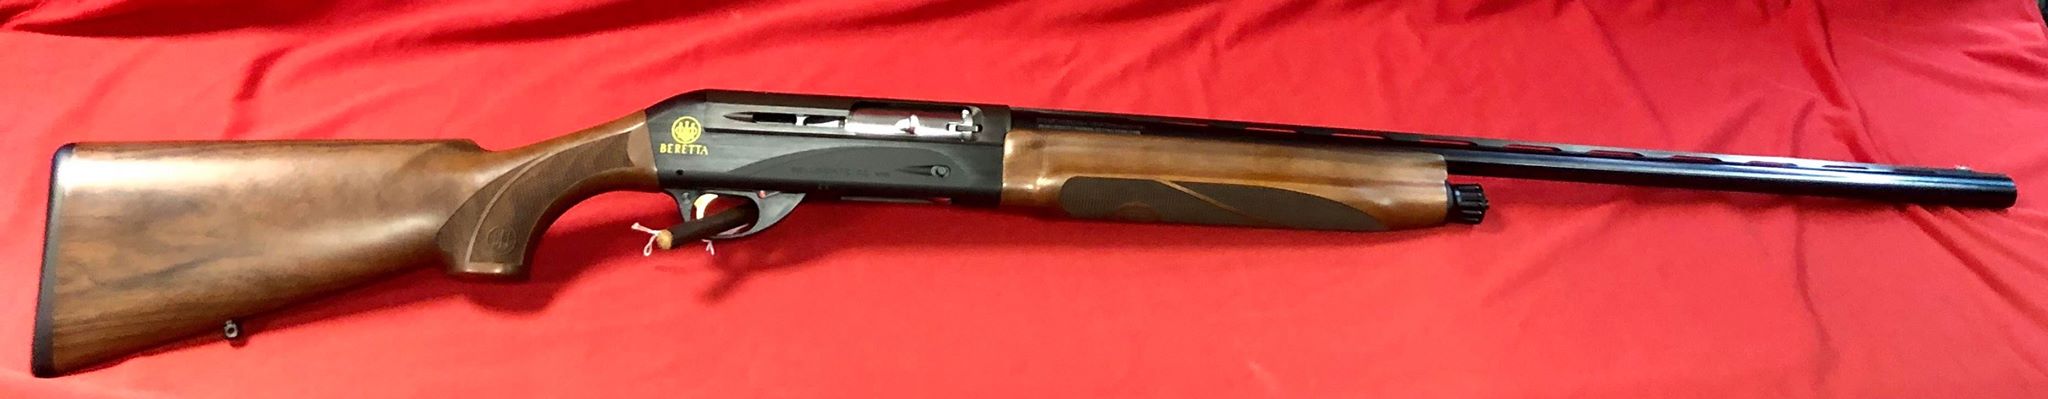 Fusil semi-automatique Beretta Bellmonte II en calibre 12/76 , détente dorée , choks interchangeables , fibre optique rouge.
Longueur de canon 76cm
Longueur de crosse 36 cm